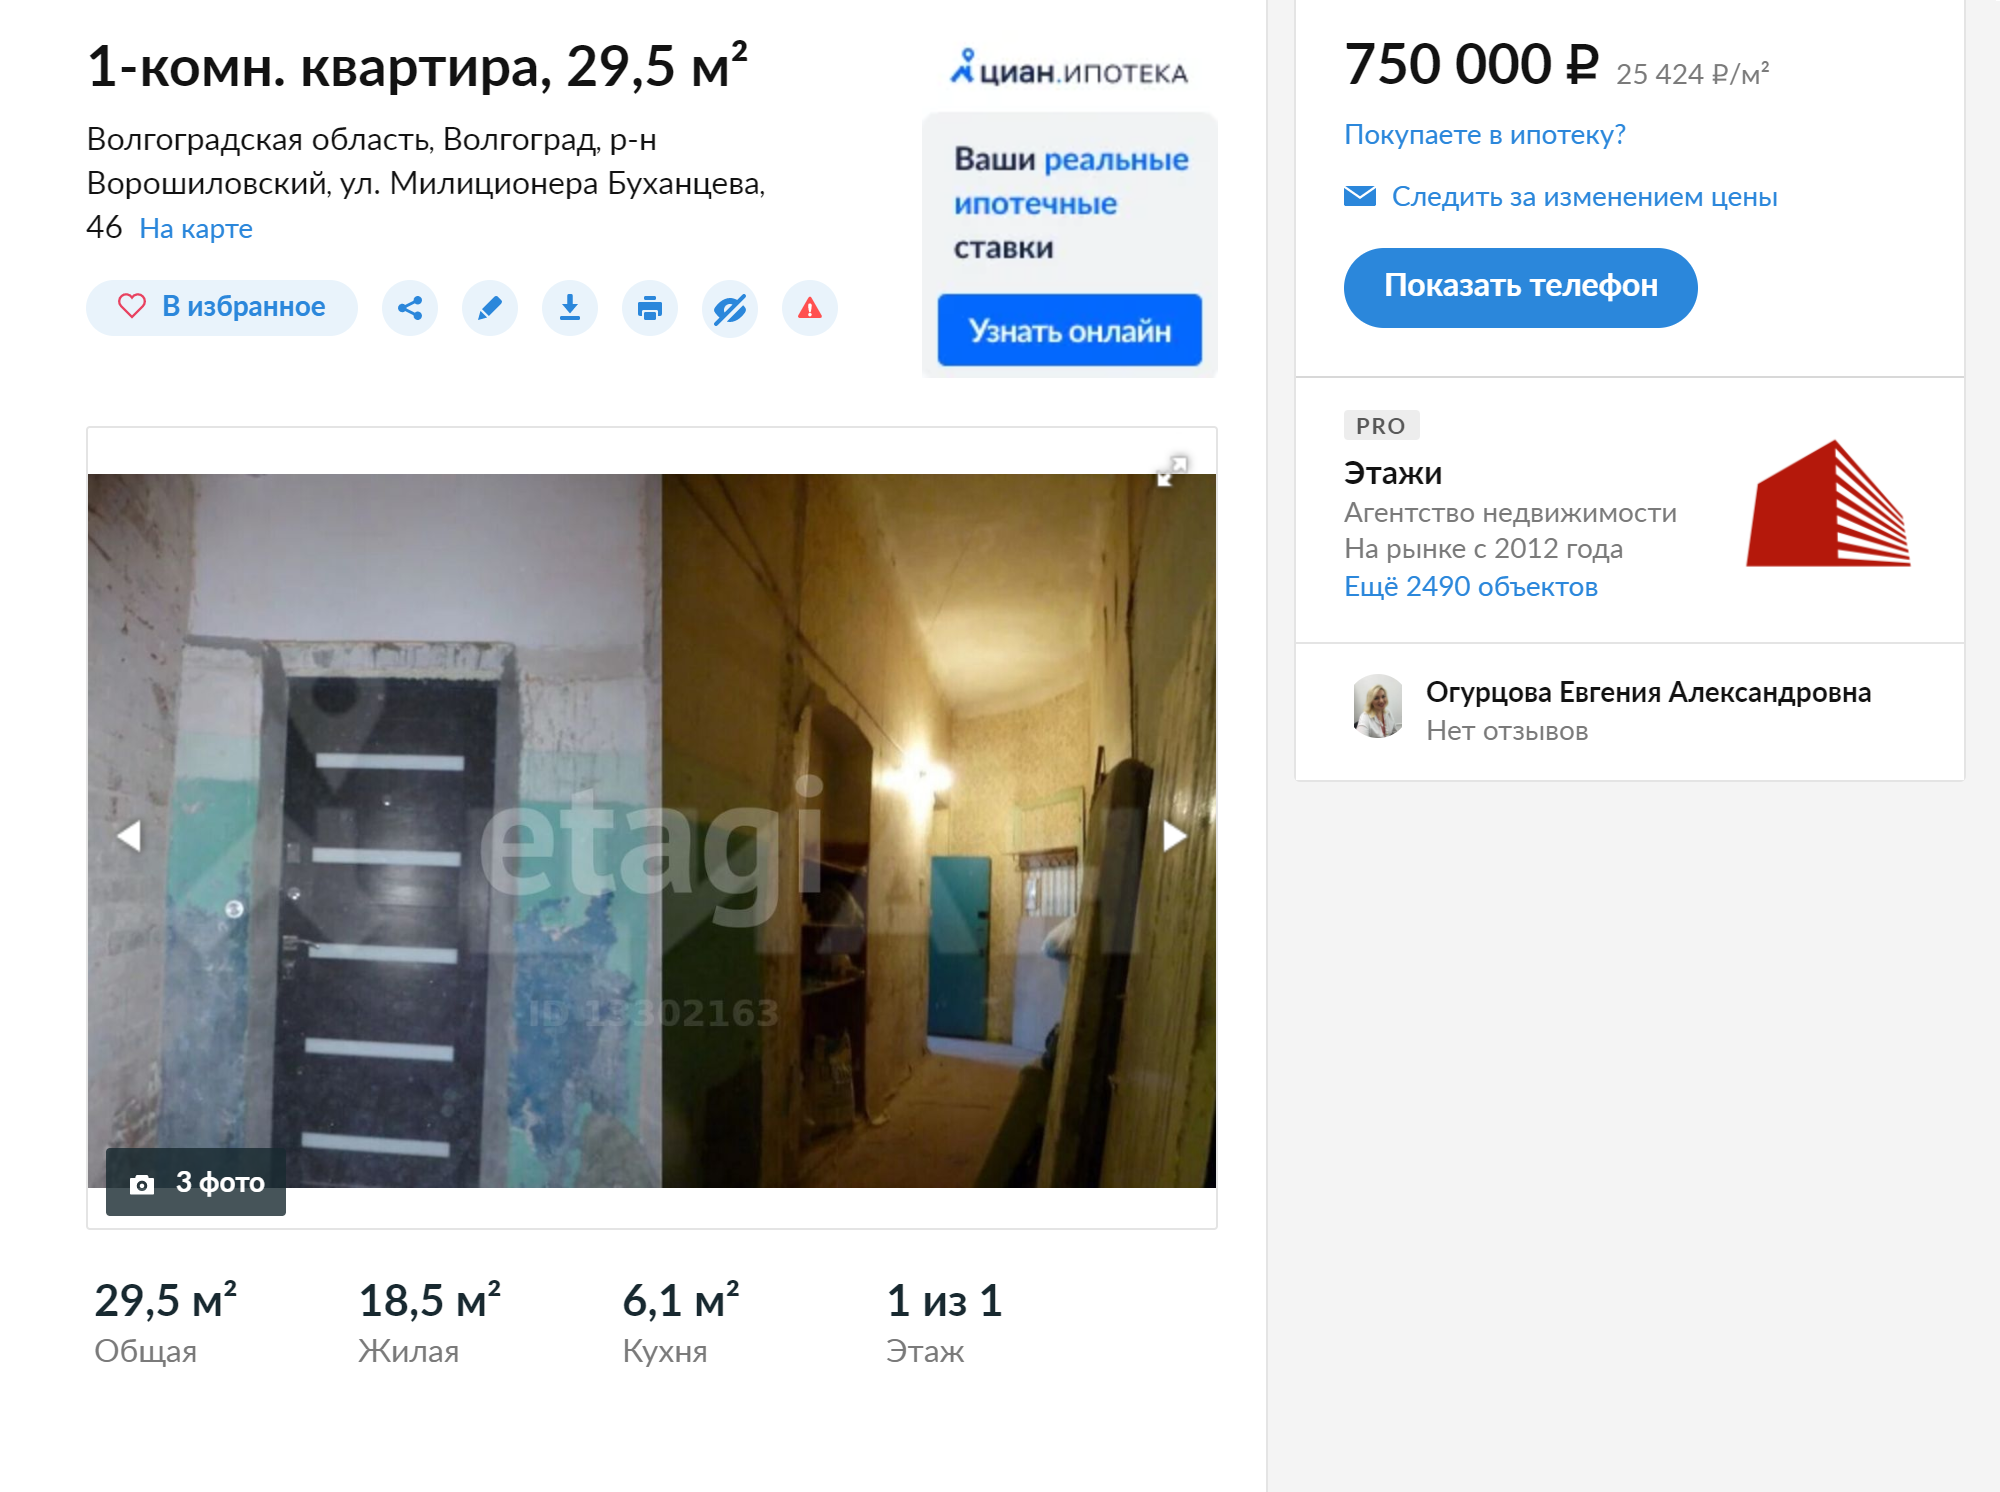 Однокомнатная квартира в Ворошиловском районе неподалеку от моего дома. Жилье в очень плохом состоянии, но и стоит всего 750 тысяч